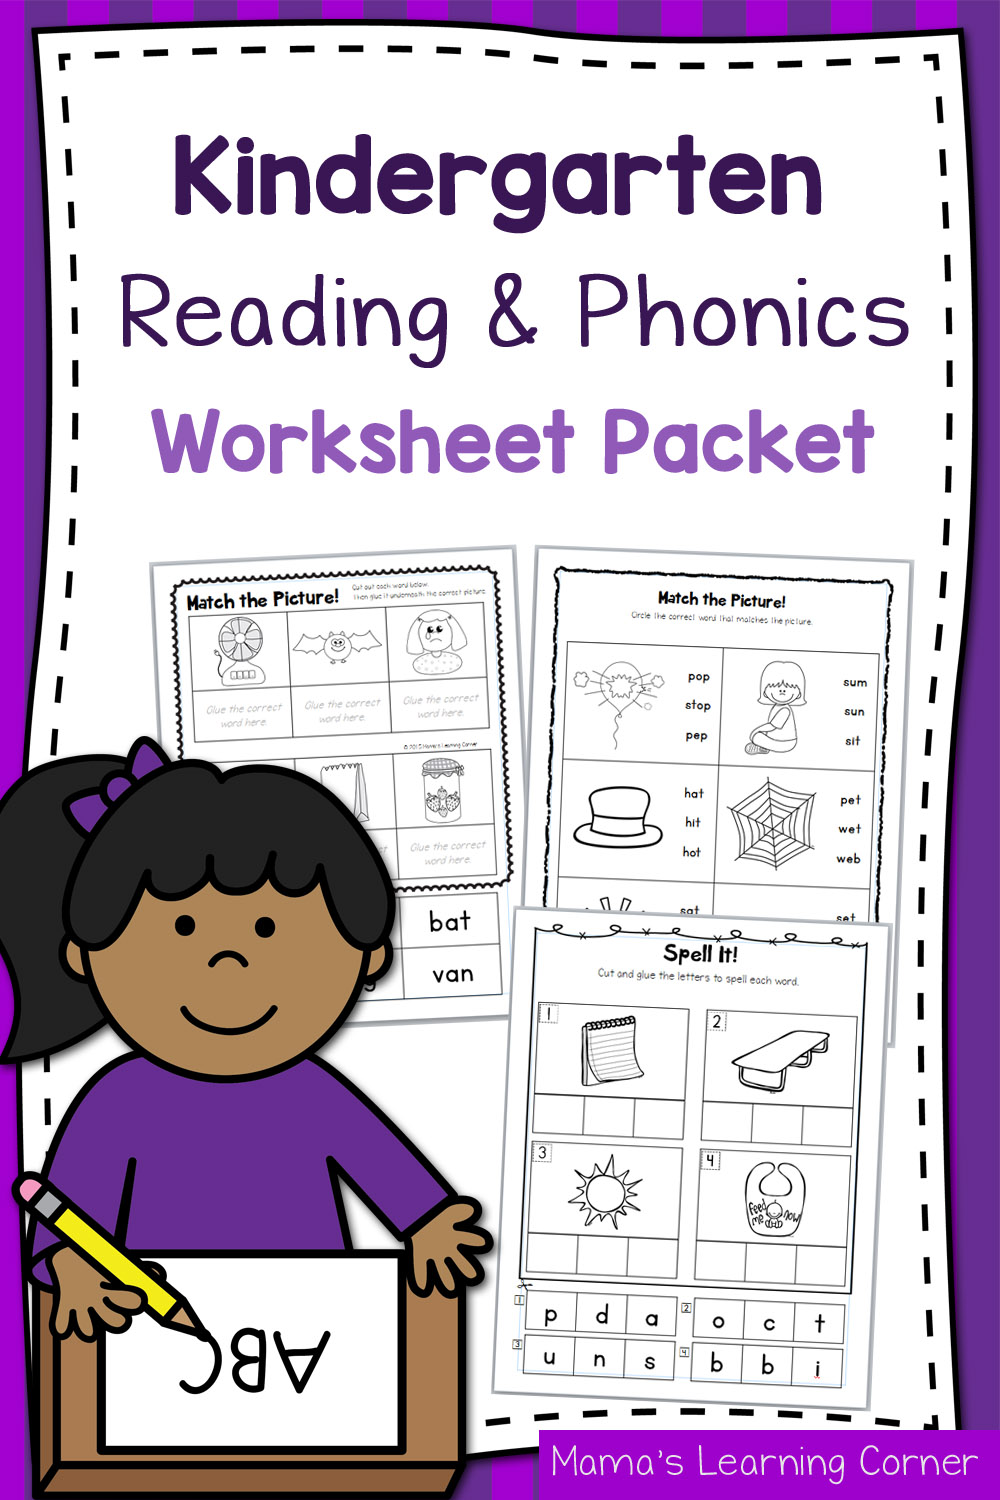 Kindergarten Reading and Phonics Packet 1 - Kindergarten Reading Activities